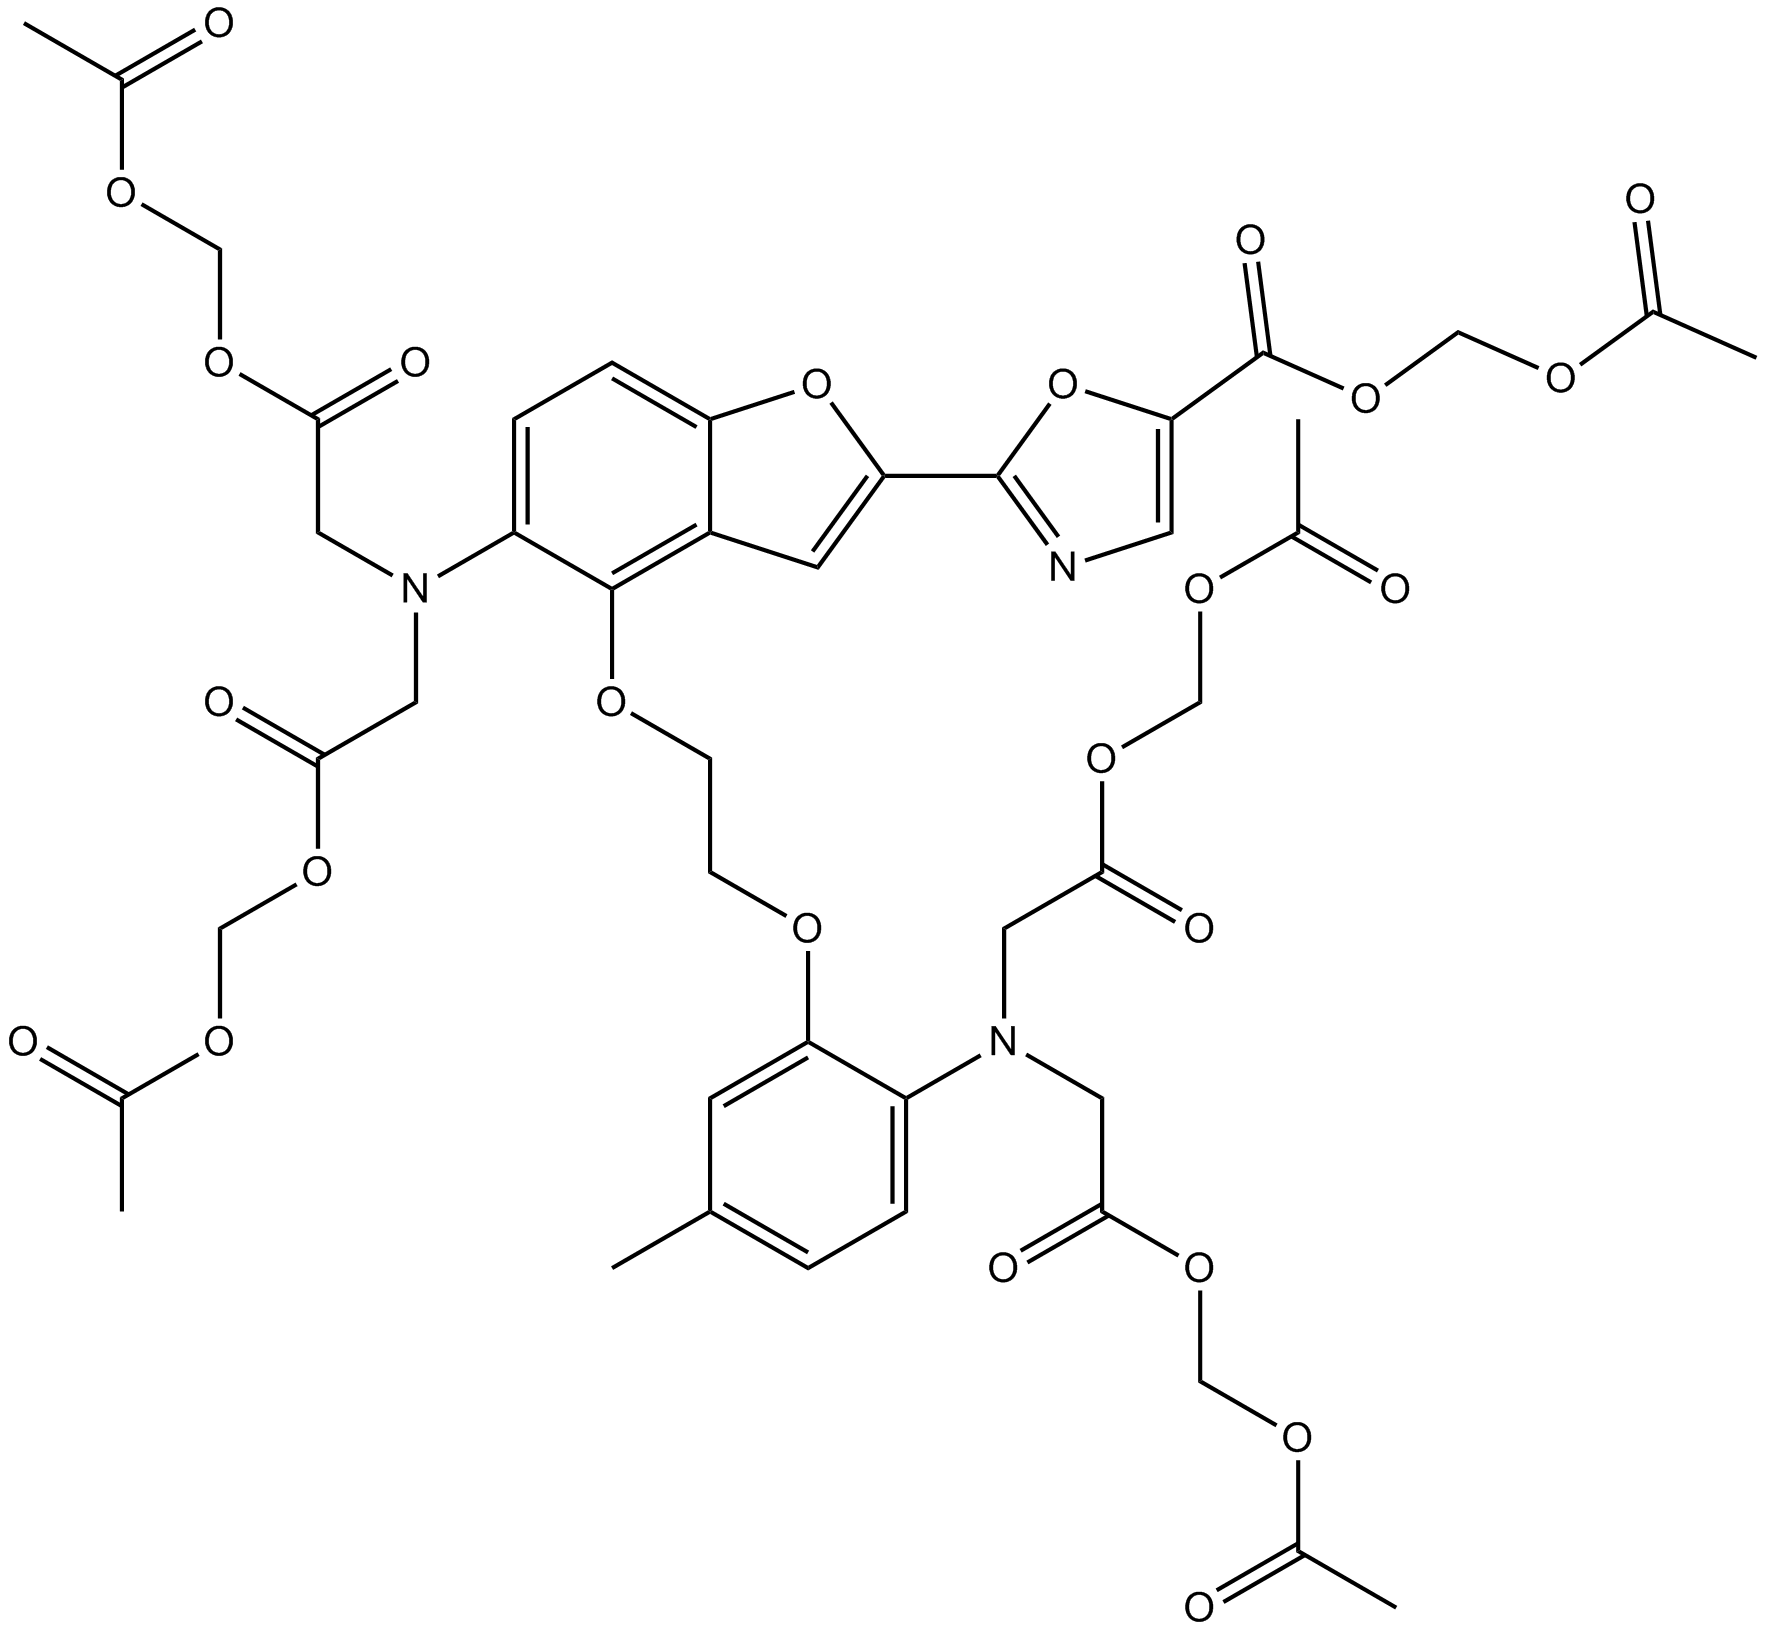 Fura-2 AM التركيب الكيميائي